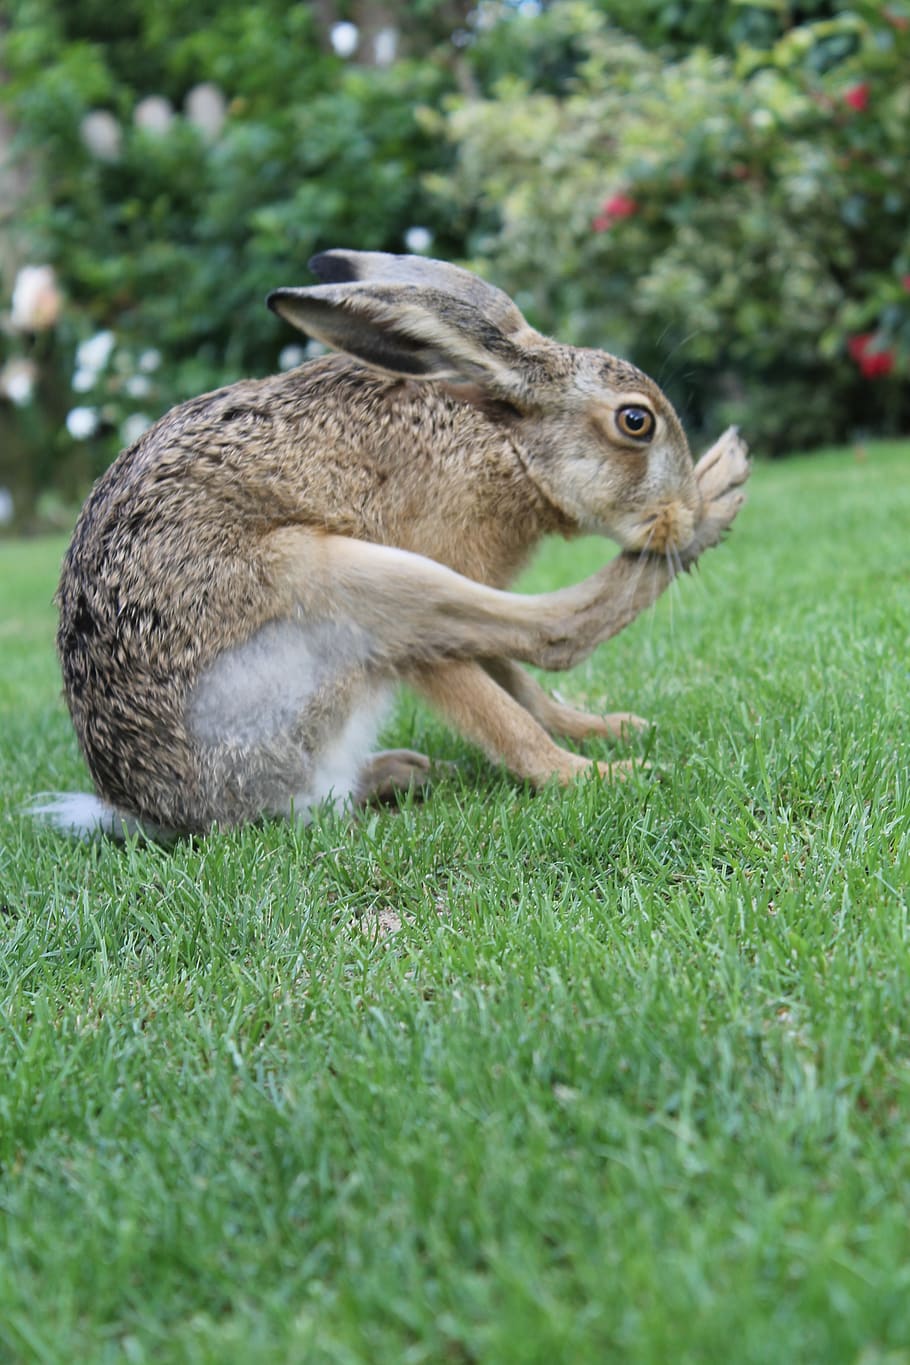 hare vs rabbit vs bunny